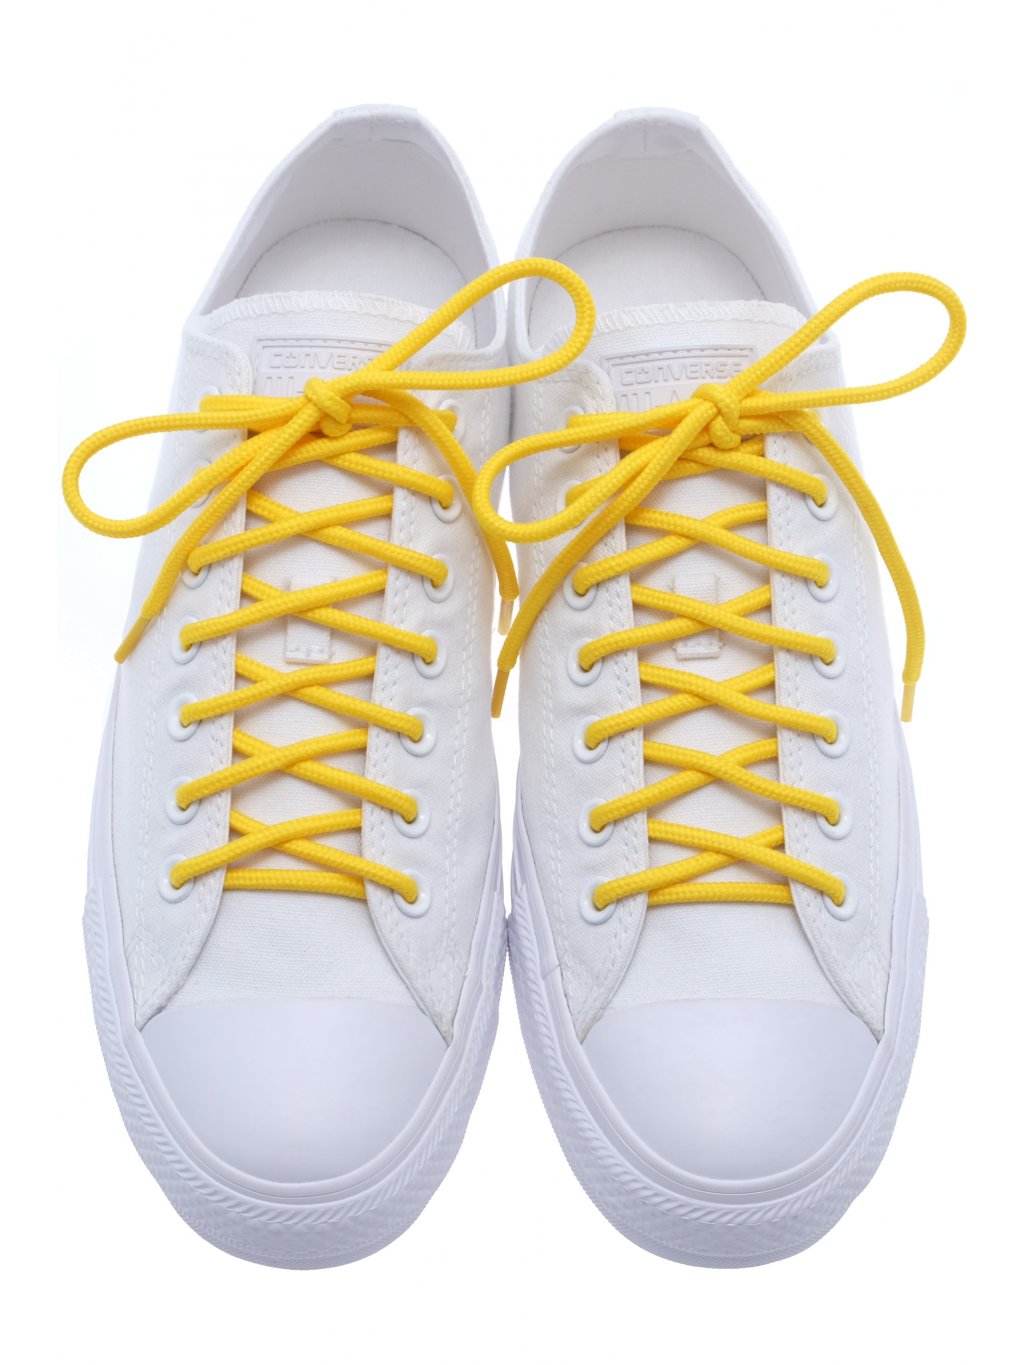 Kulaté tkaničky do bot žlutá